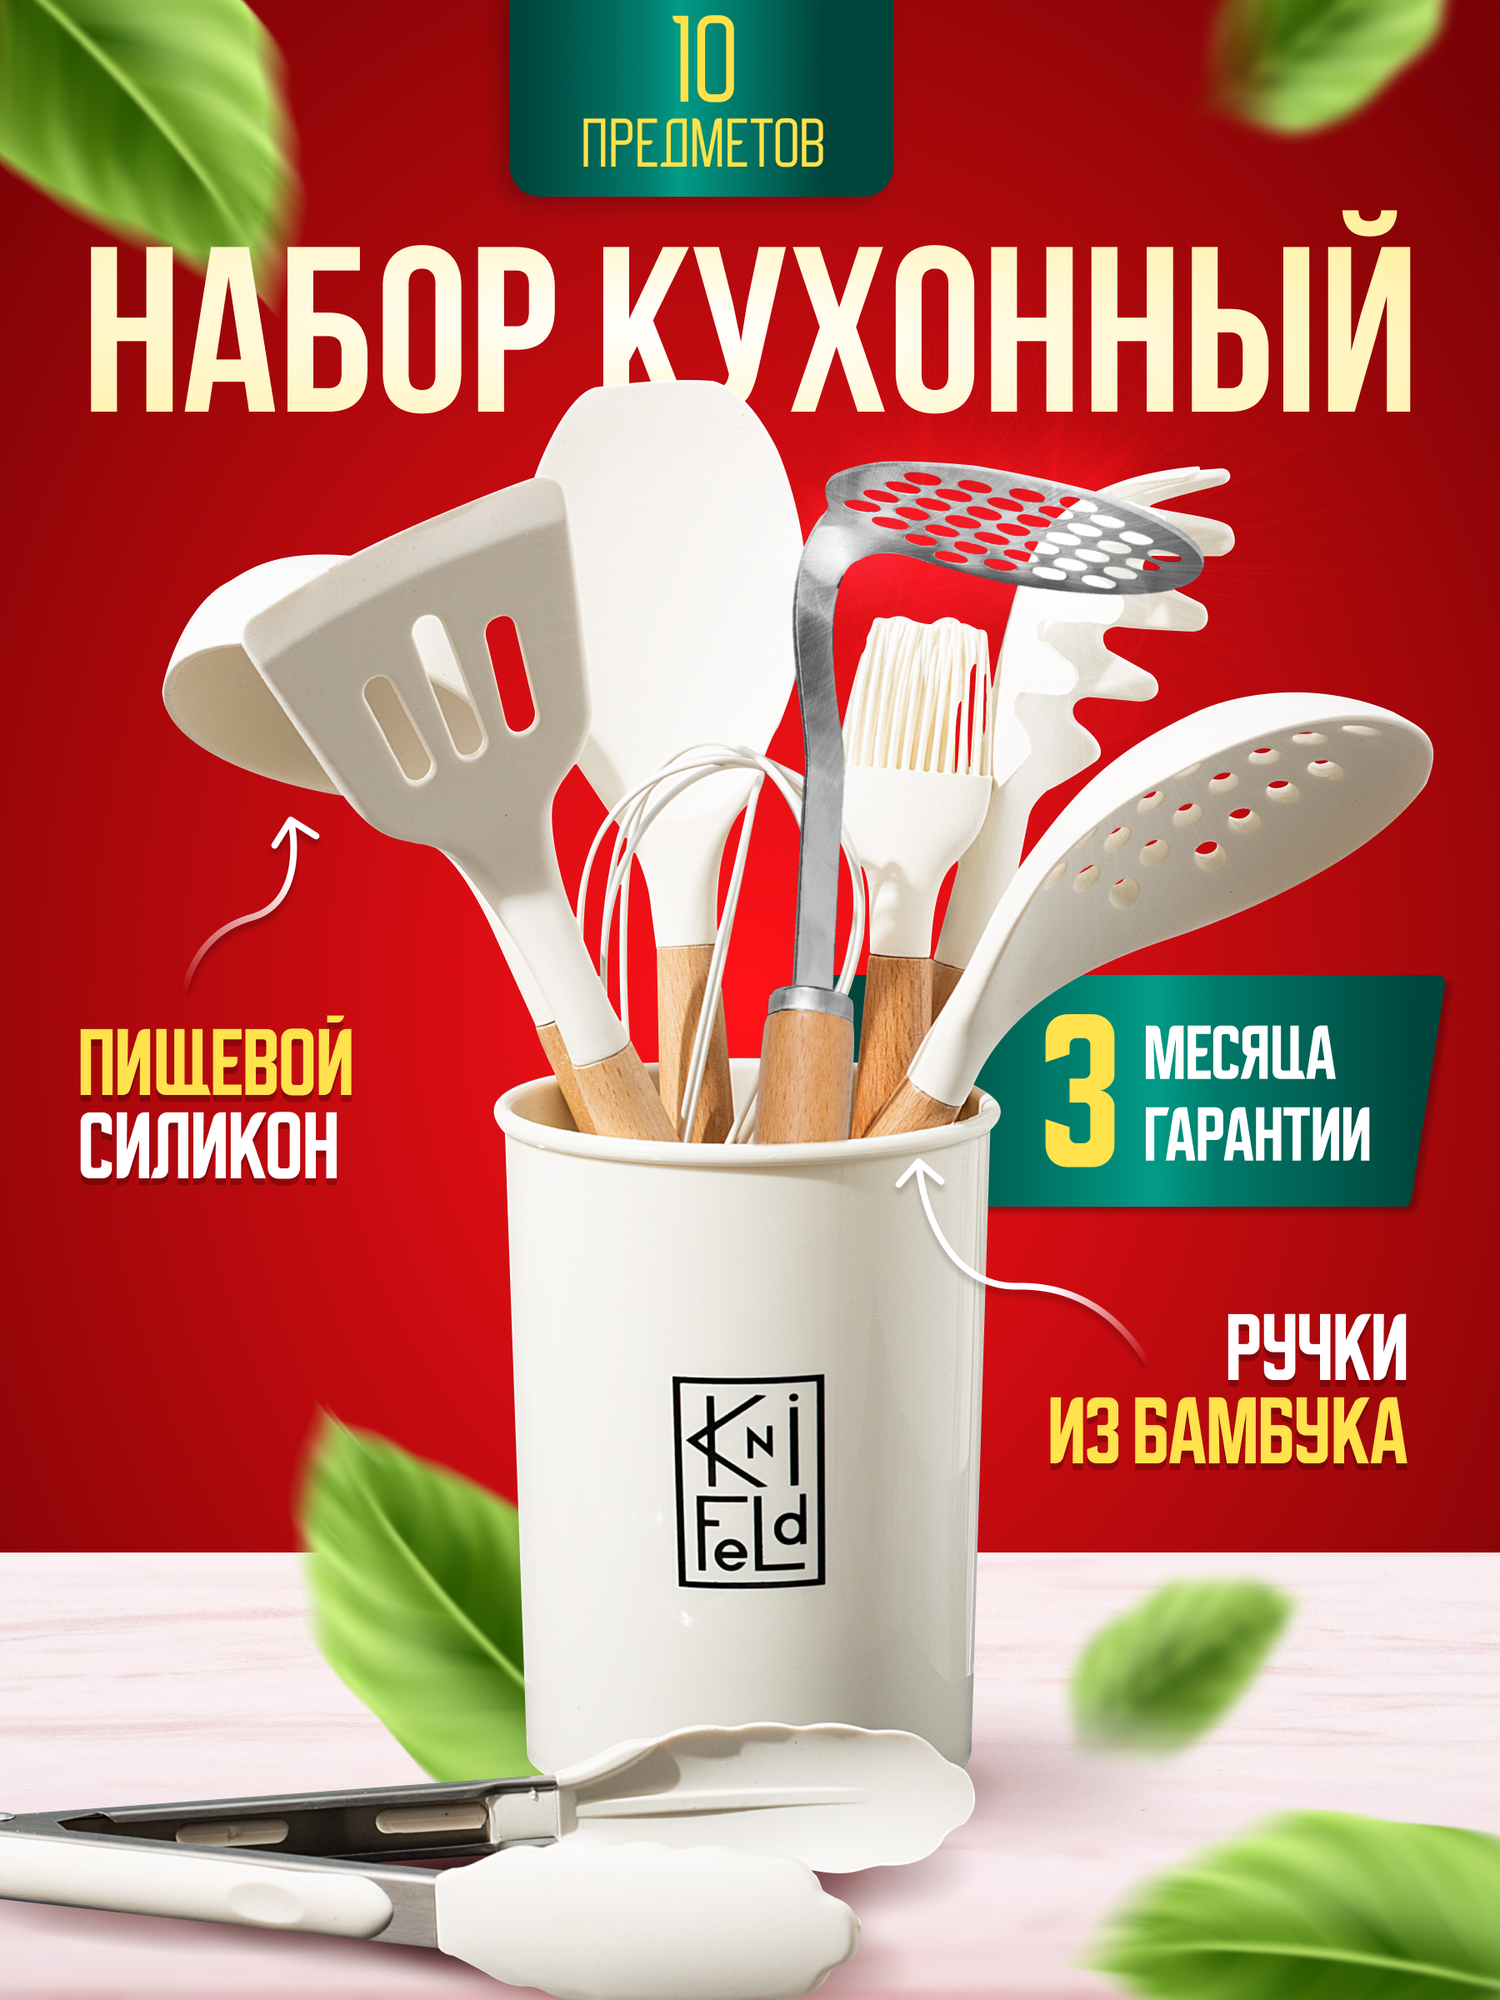 Набор кухонных принадлежностей с подставкой Knifeld, 10 предметов, молочный